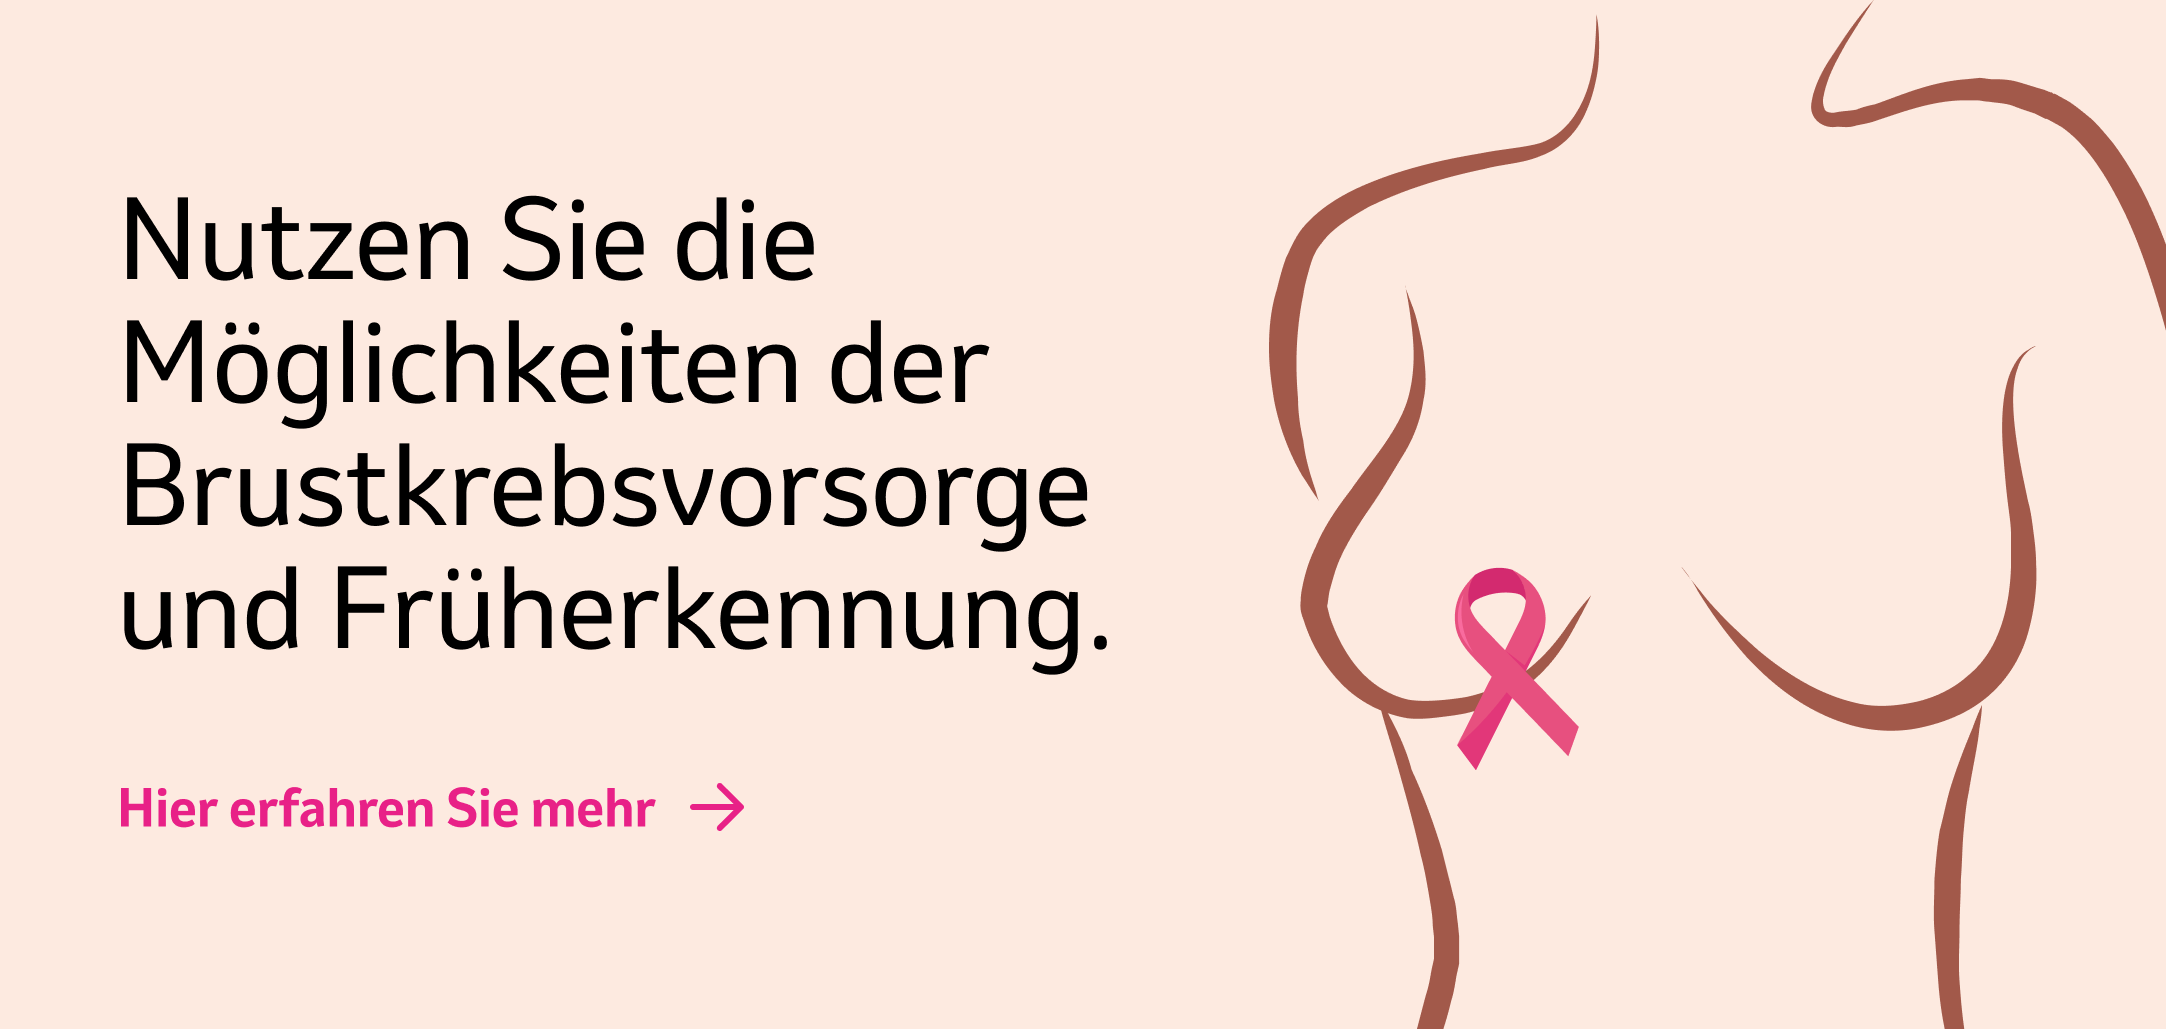 Banner "Nutzen Sie die Möglichkeiten der Brustkrebsvorsorge und Früherkennung"